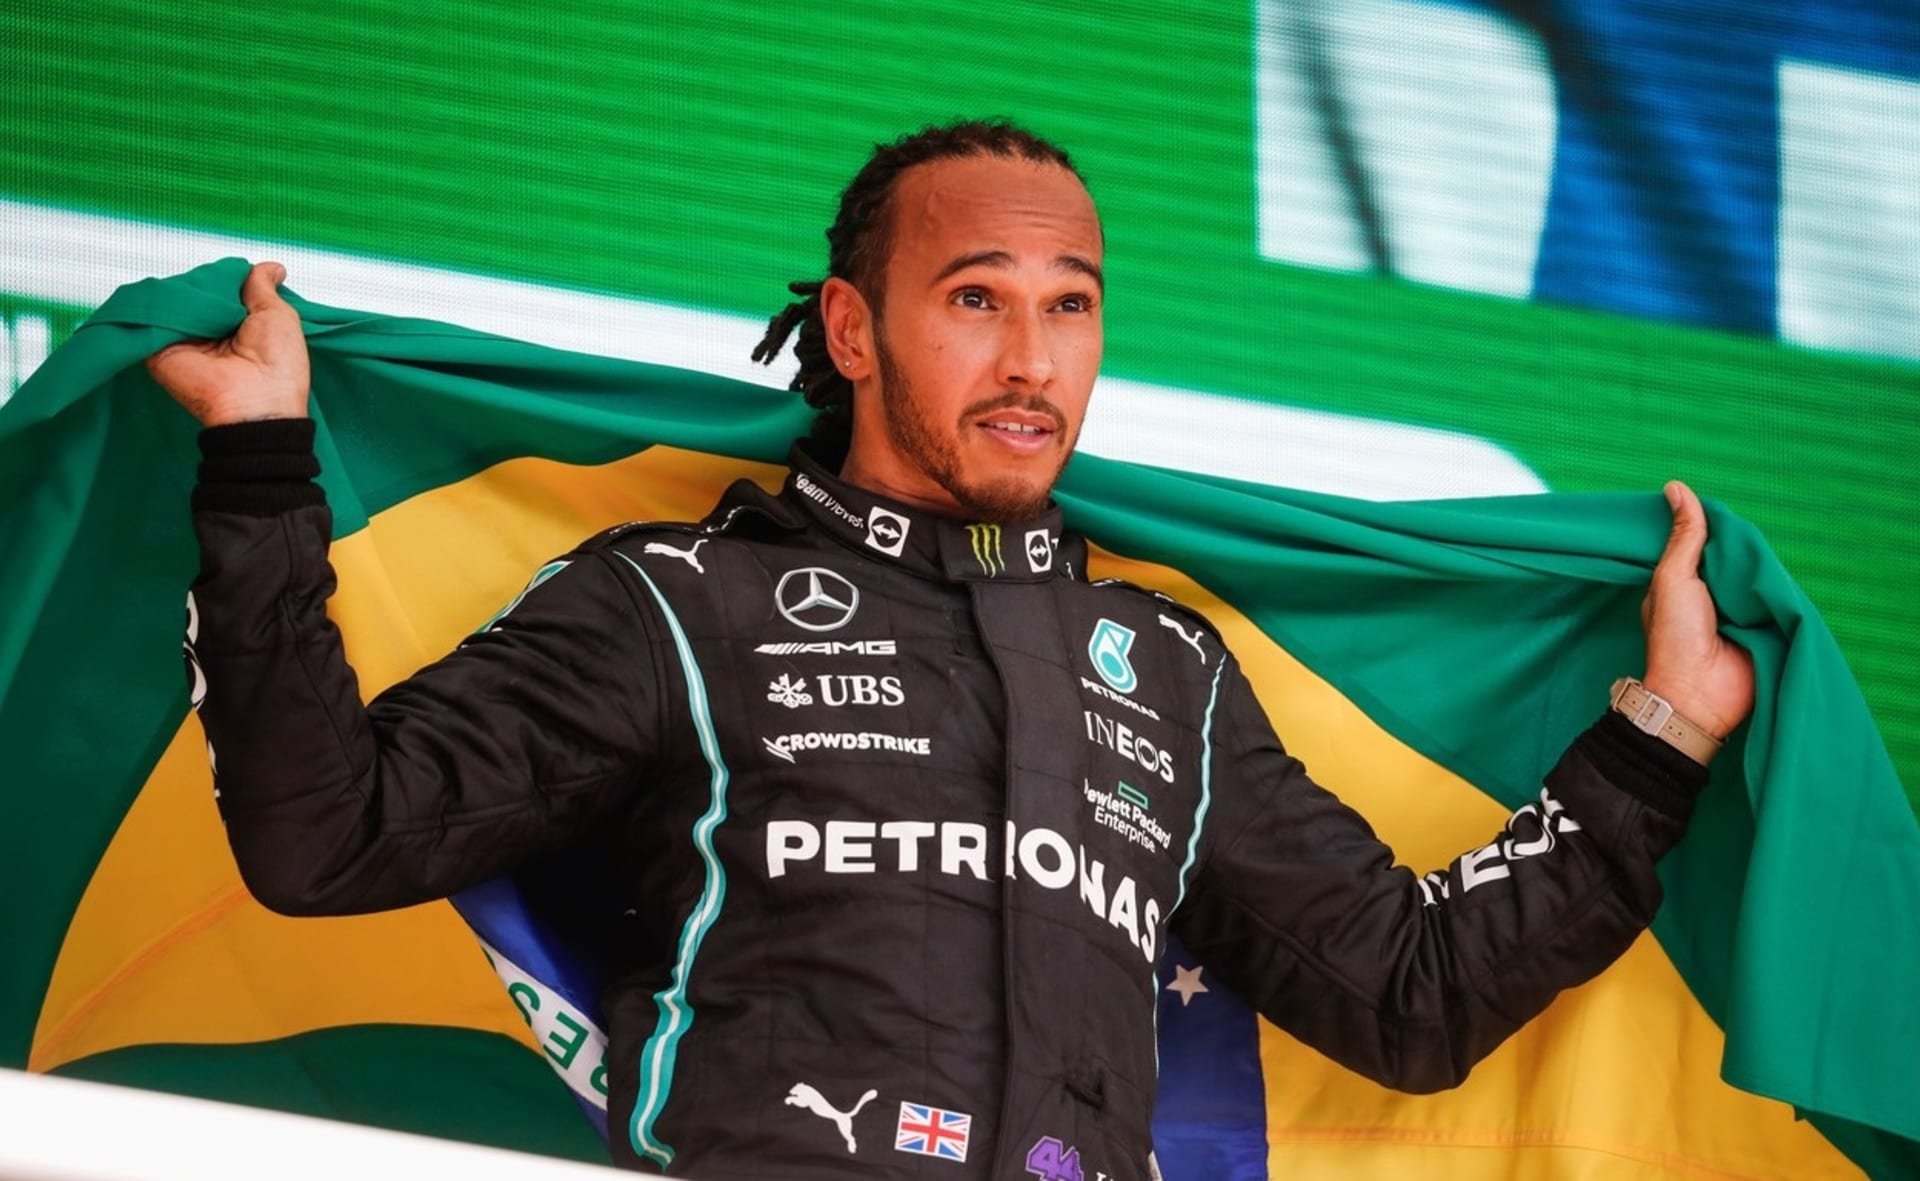 Jeden z nejlepších pilotů v historii formule 1 Lewis Hamilton si pozmění své jméno.